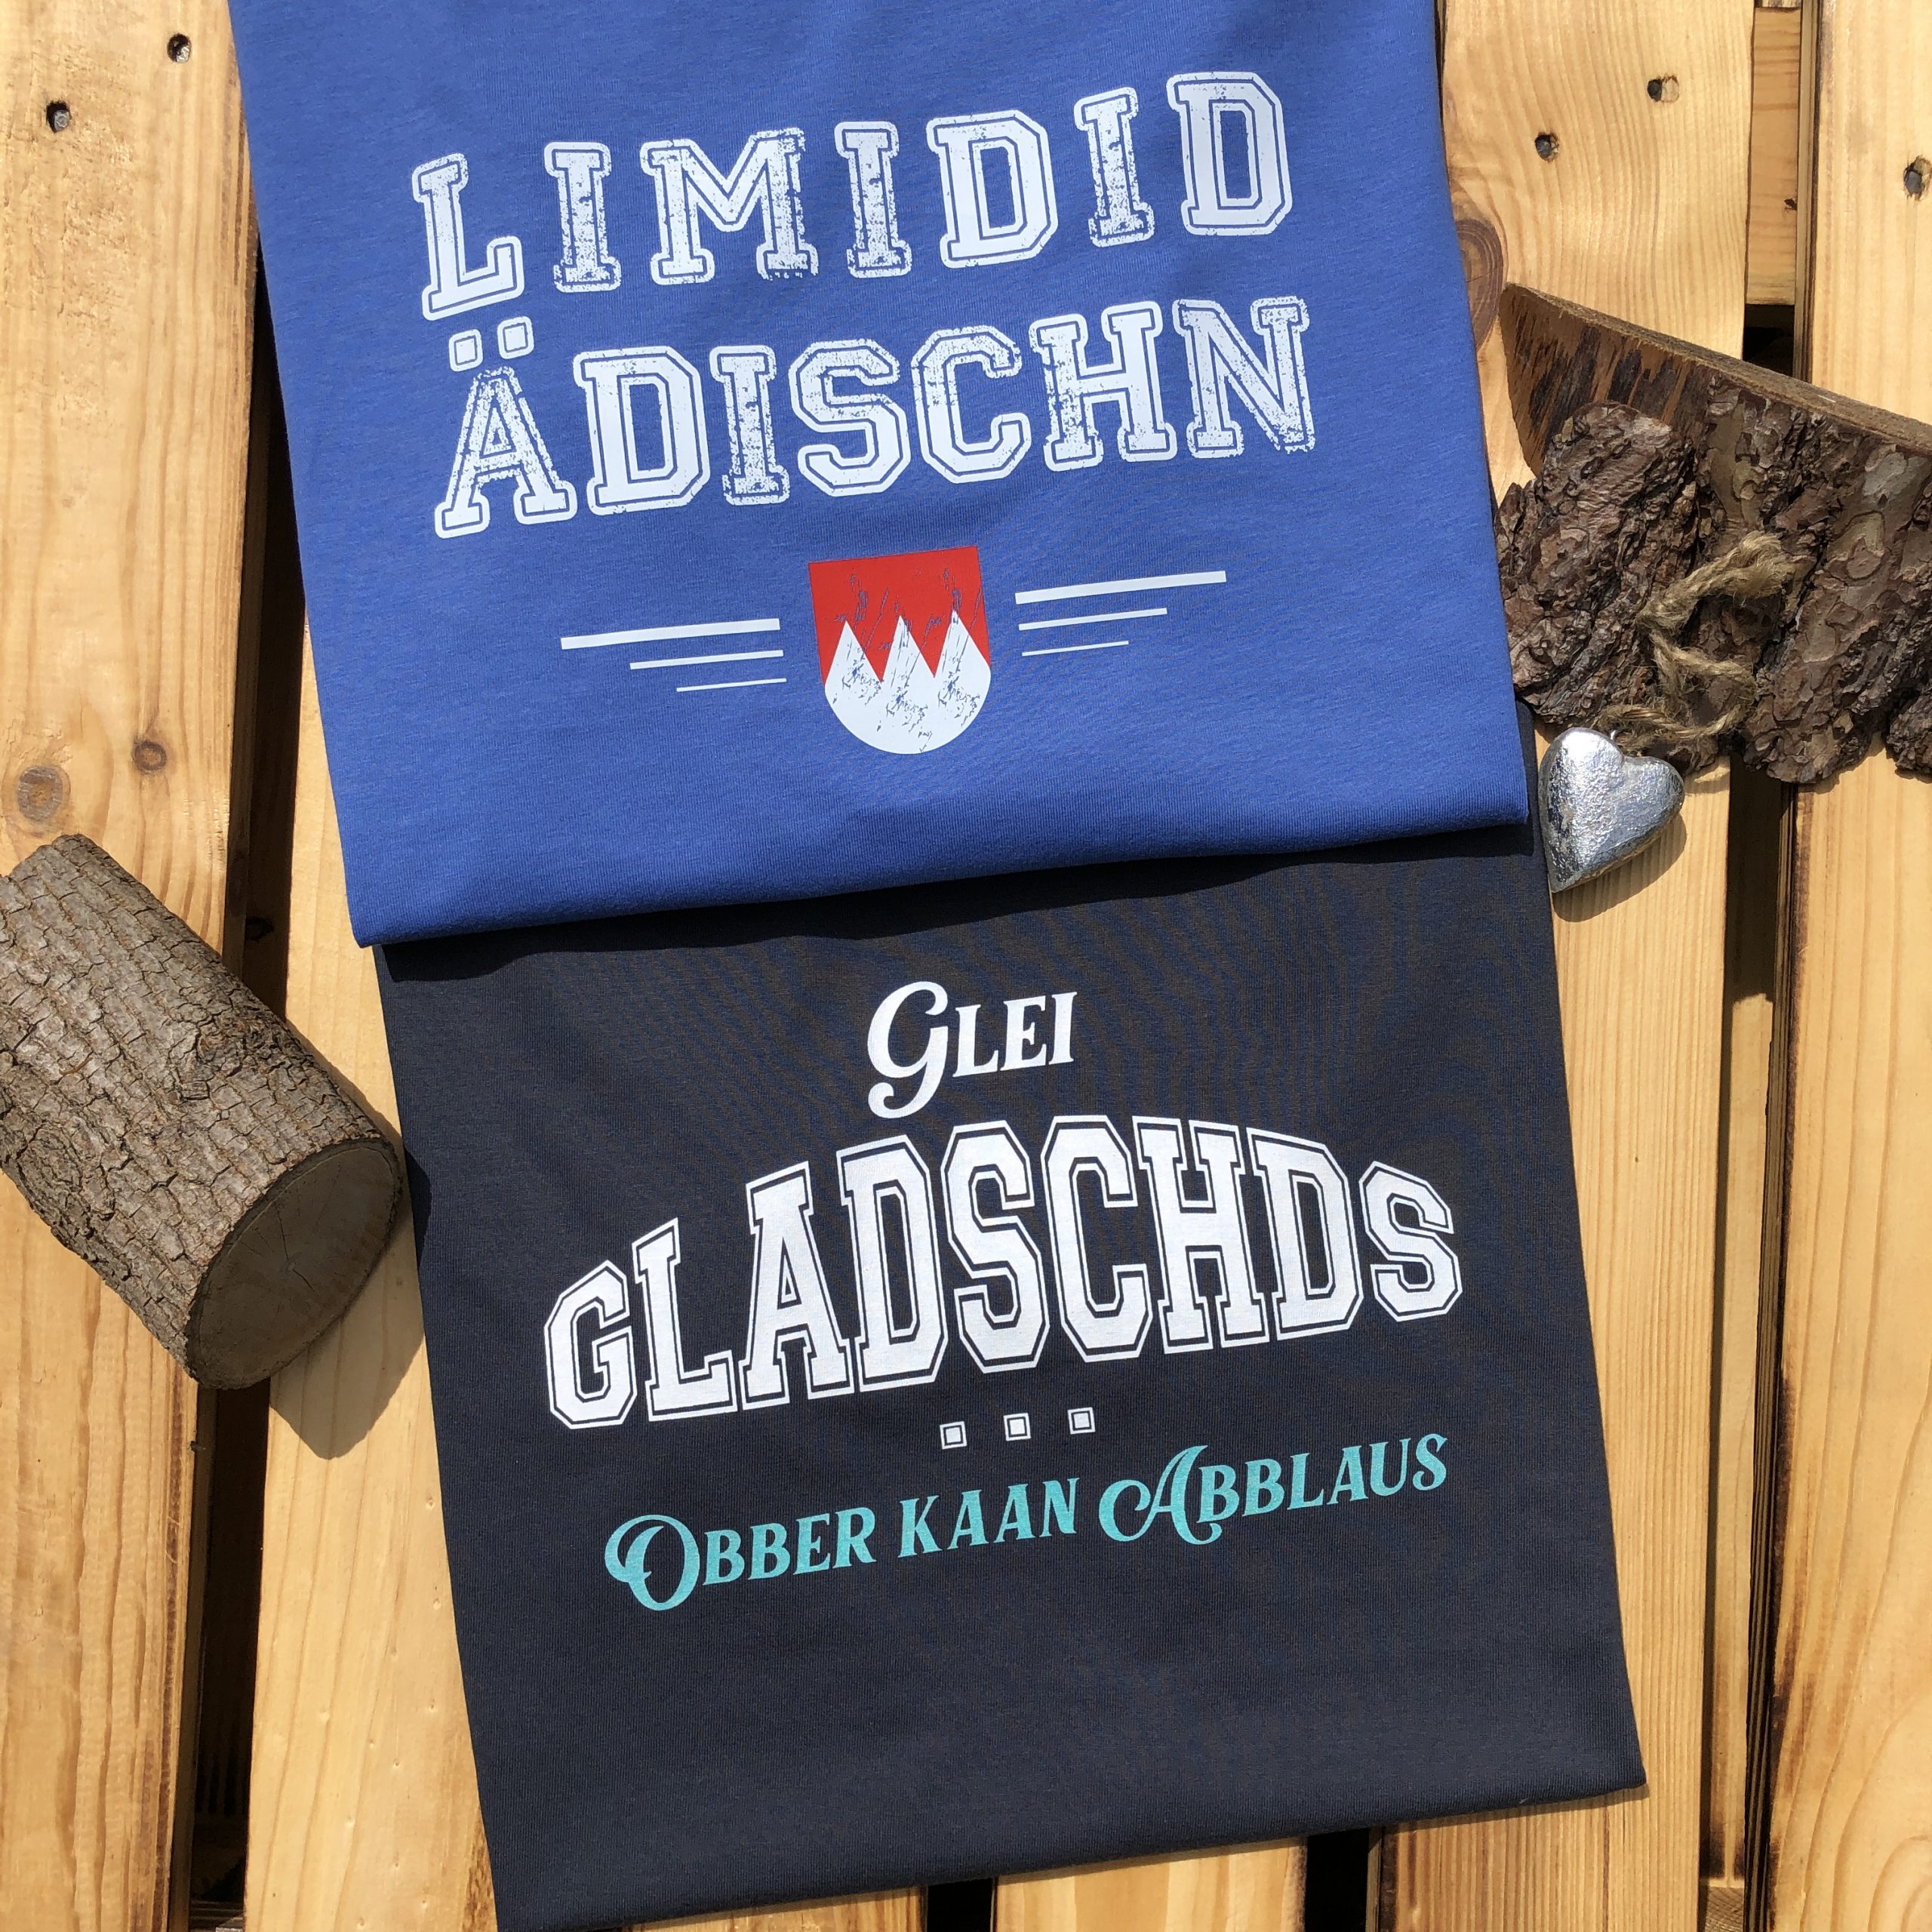 Glei Gladschds obber kaan Abblaus Shirt Fränkische Sprüche T-Shirts Frankenstyle